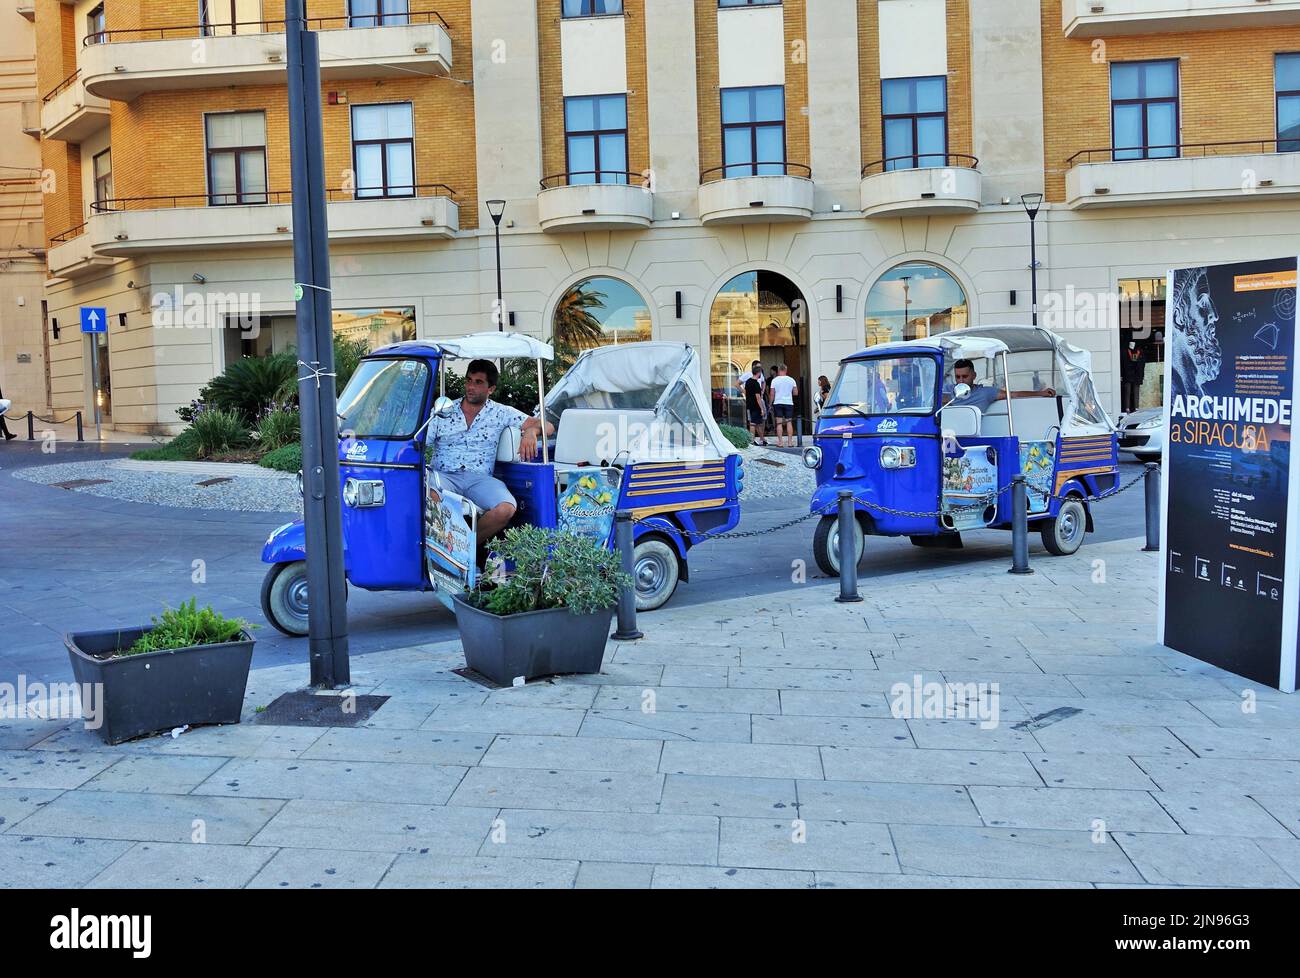 Auto rickshaw, Tuk tuk, tricycle taxi, Palermo, Sicily, Italy, Europe Stock Photo